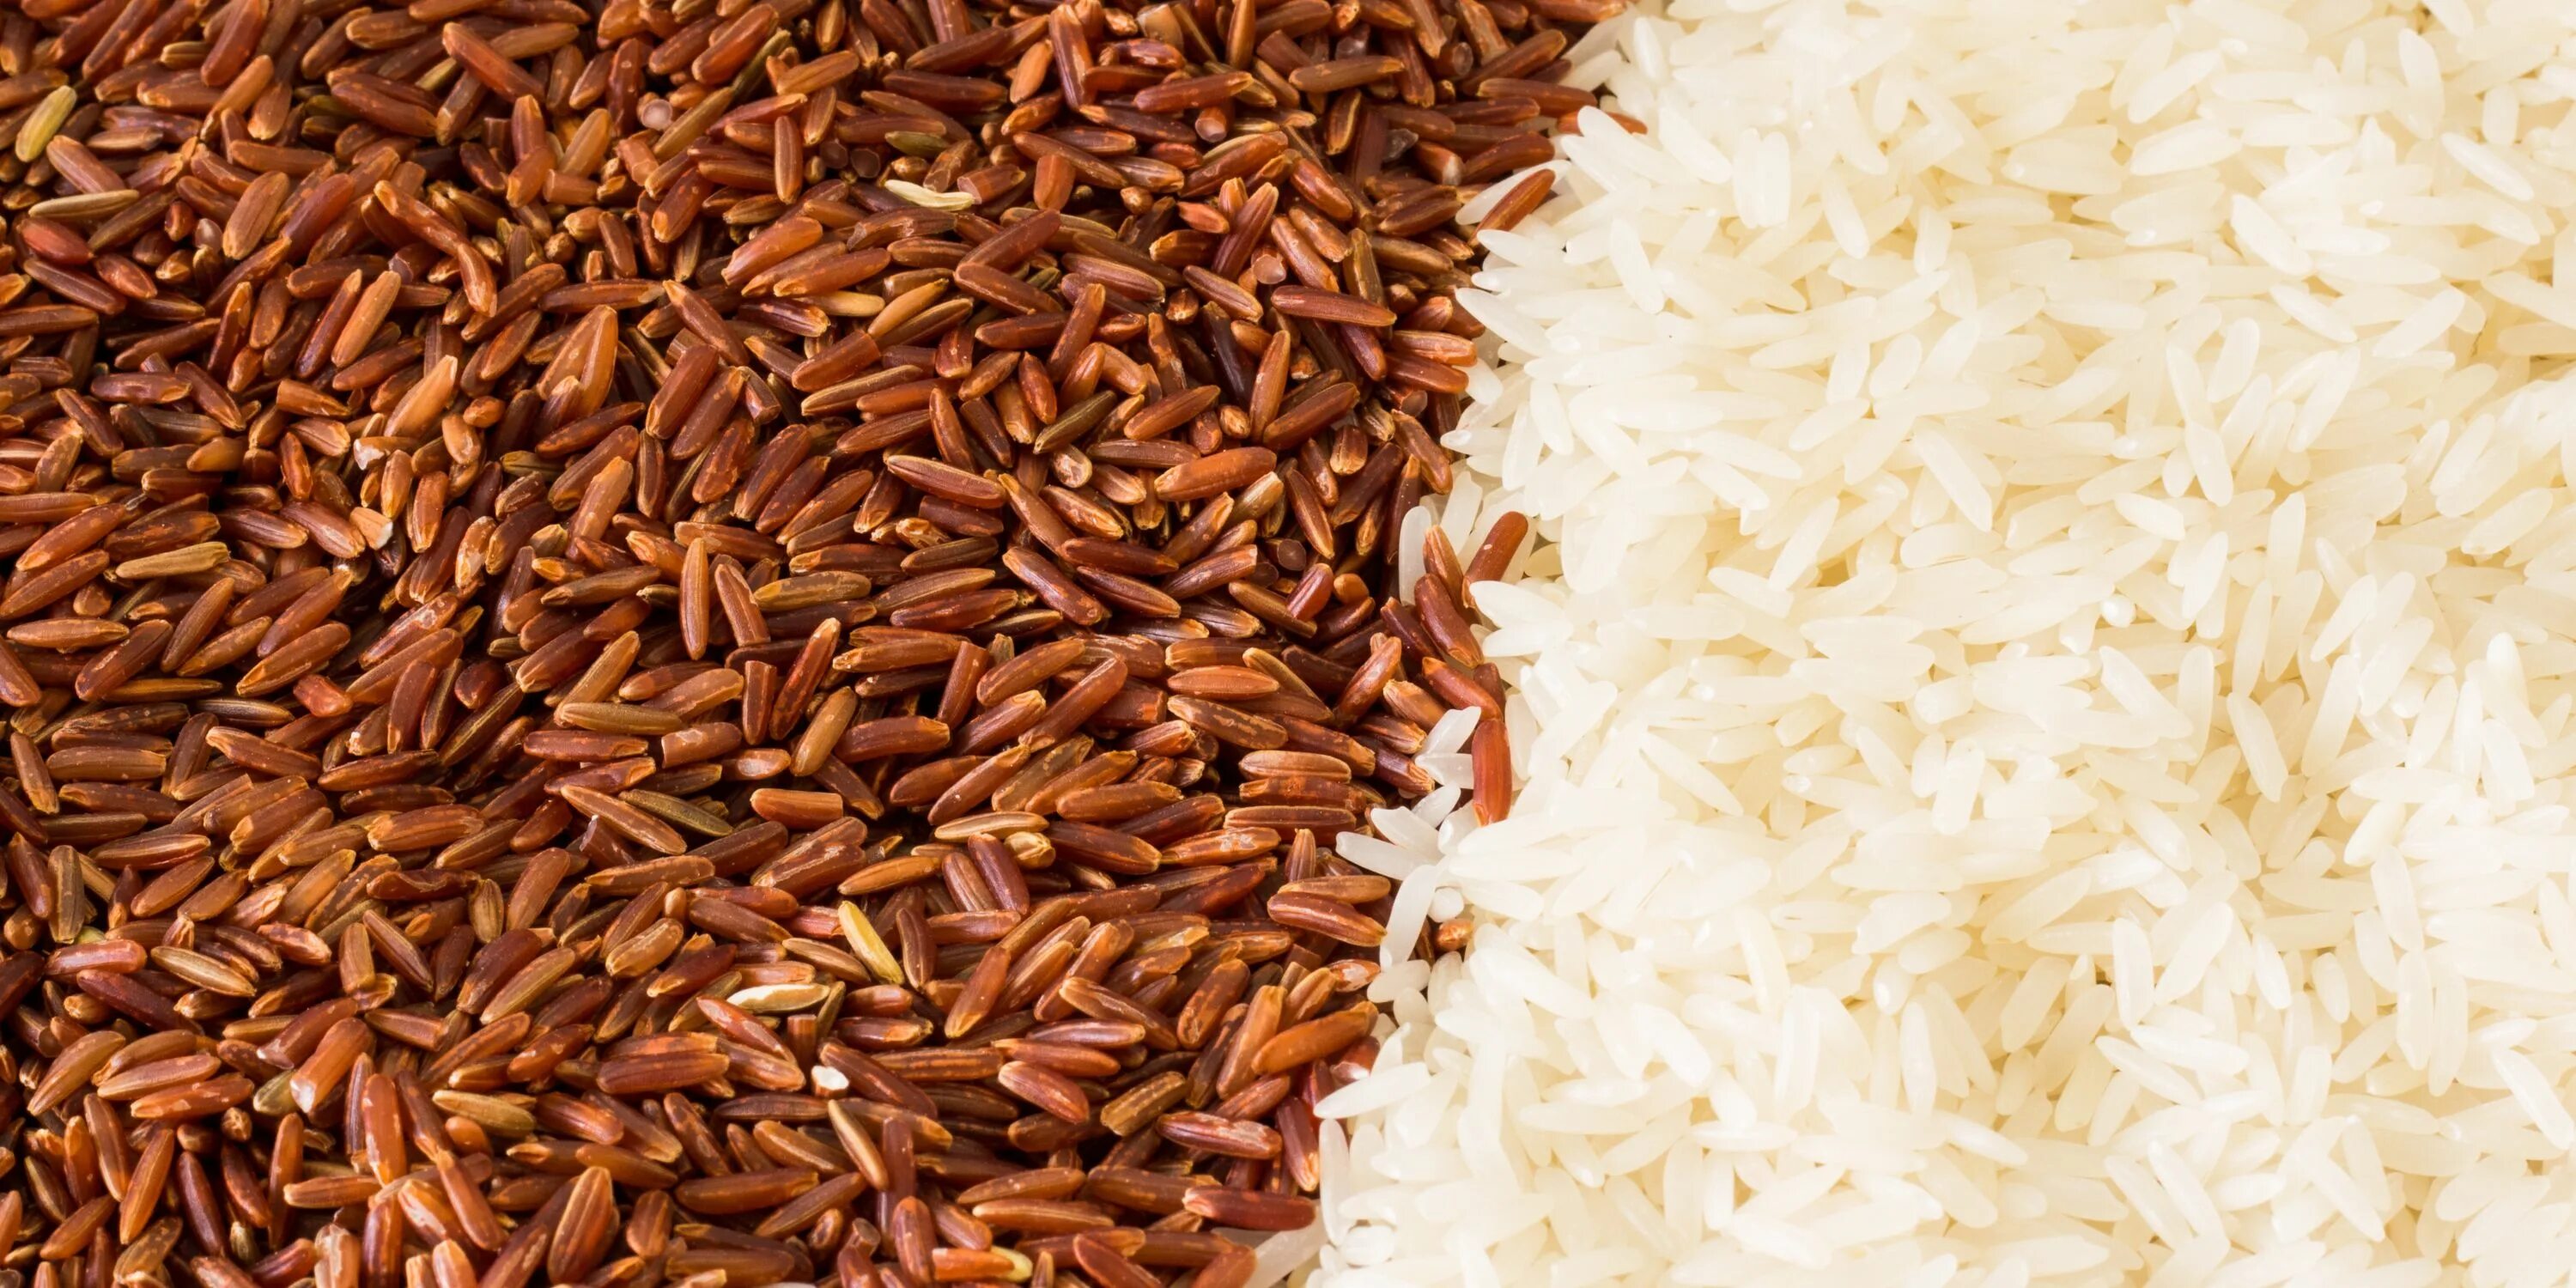 Brown rise. Рис бурый нешелушеный. Белый и коричневый рис. Коричневый неочищенный рис. Рис коричневого цвета.